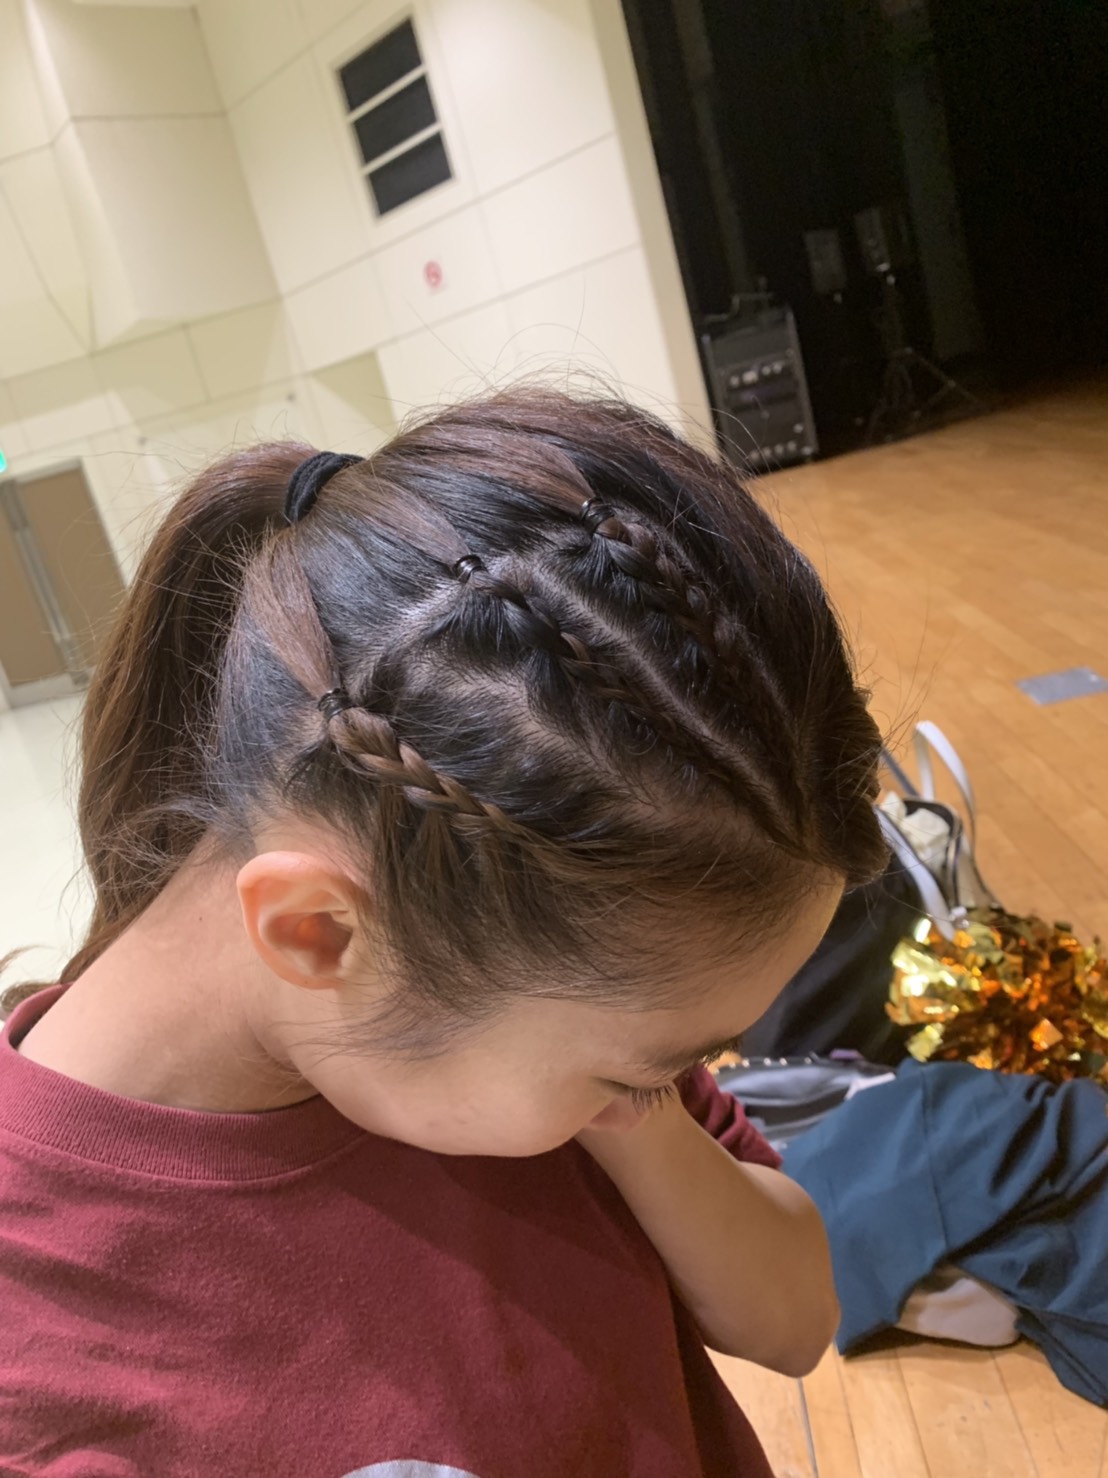 キッズダンスのヘアメイク 毛糸を使ったヘアアレンジ Gravis 神奈川 東京で人気のチア キッズチアダンススクール